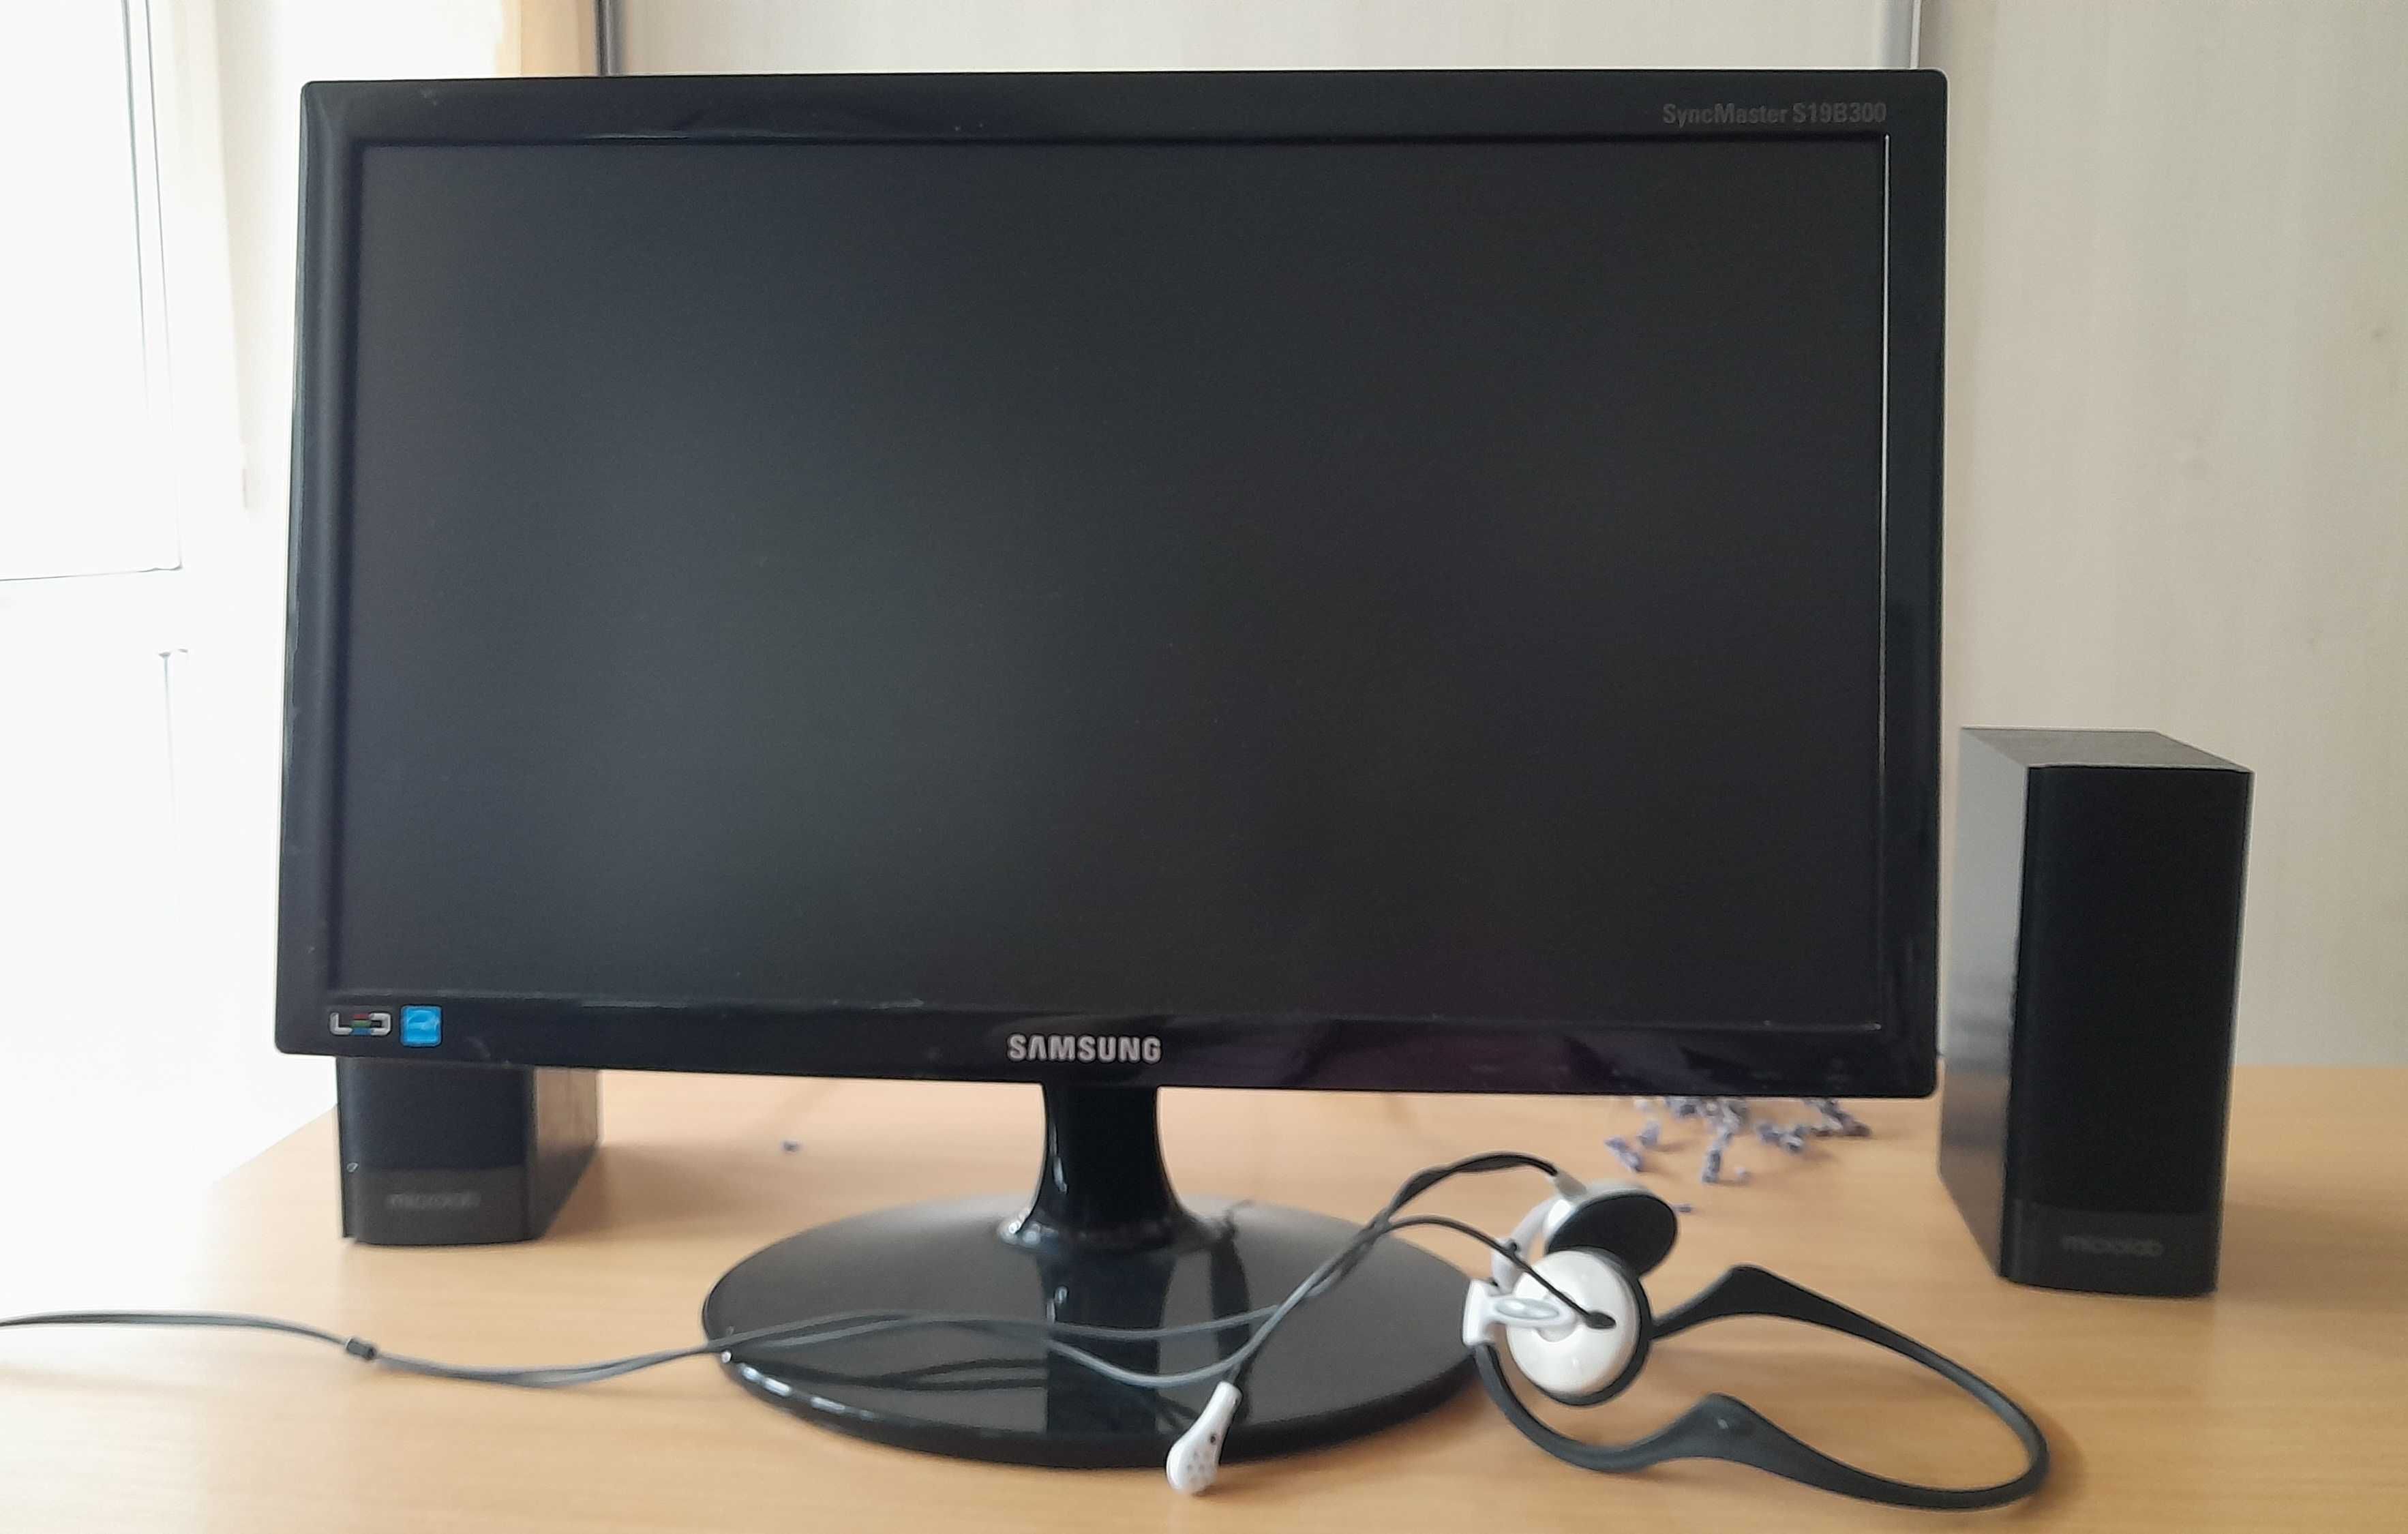 PC complet echipat (monitor LED, boxe, kit casti, tastatura, mouse).